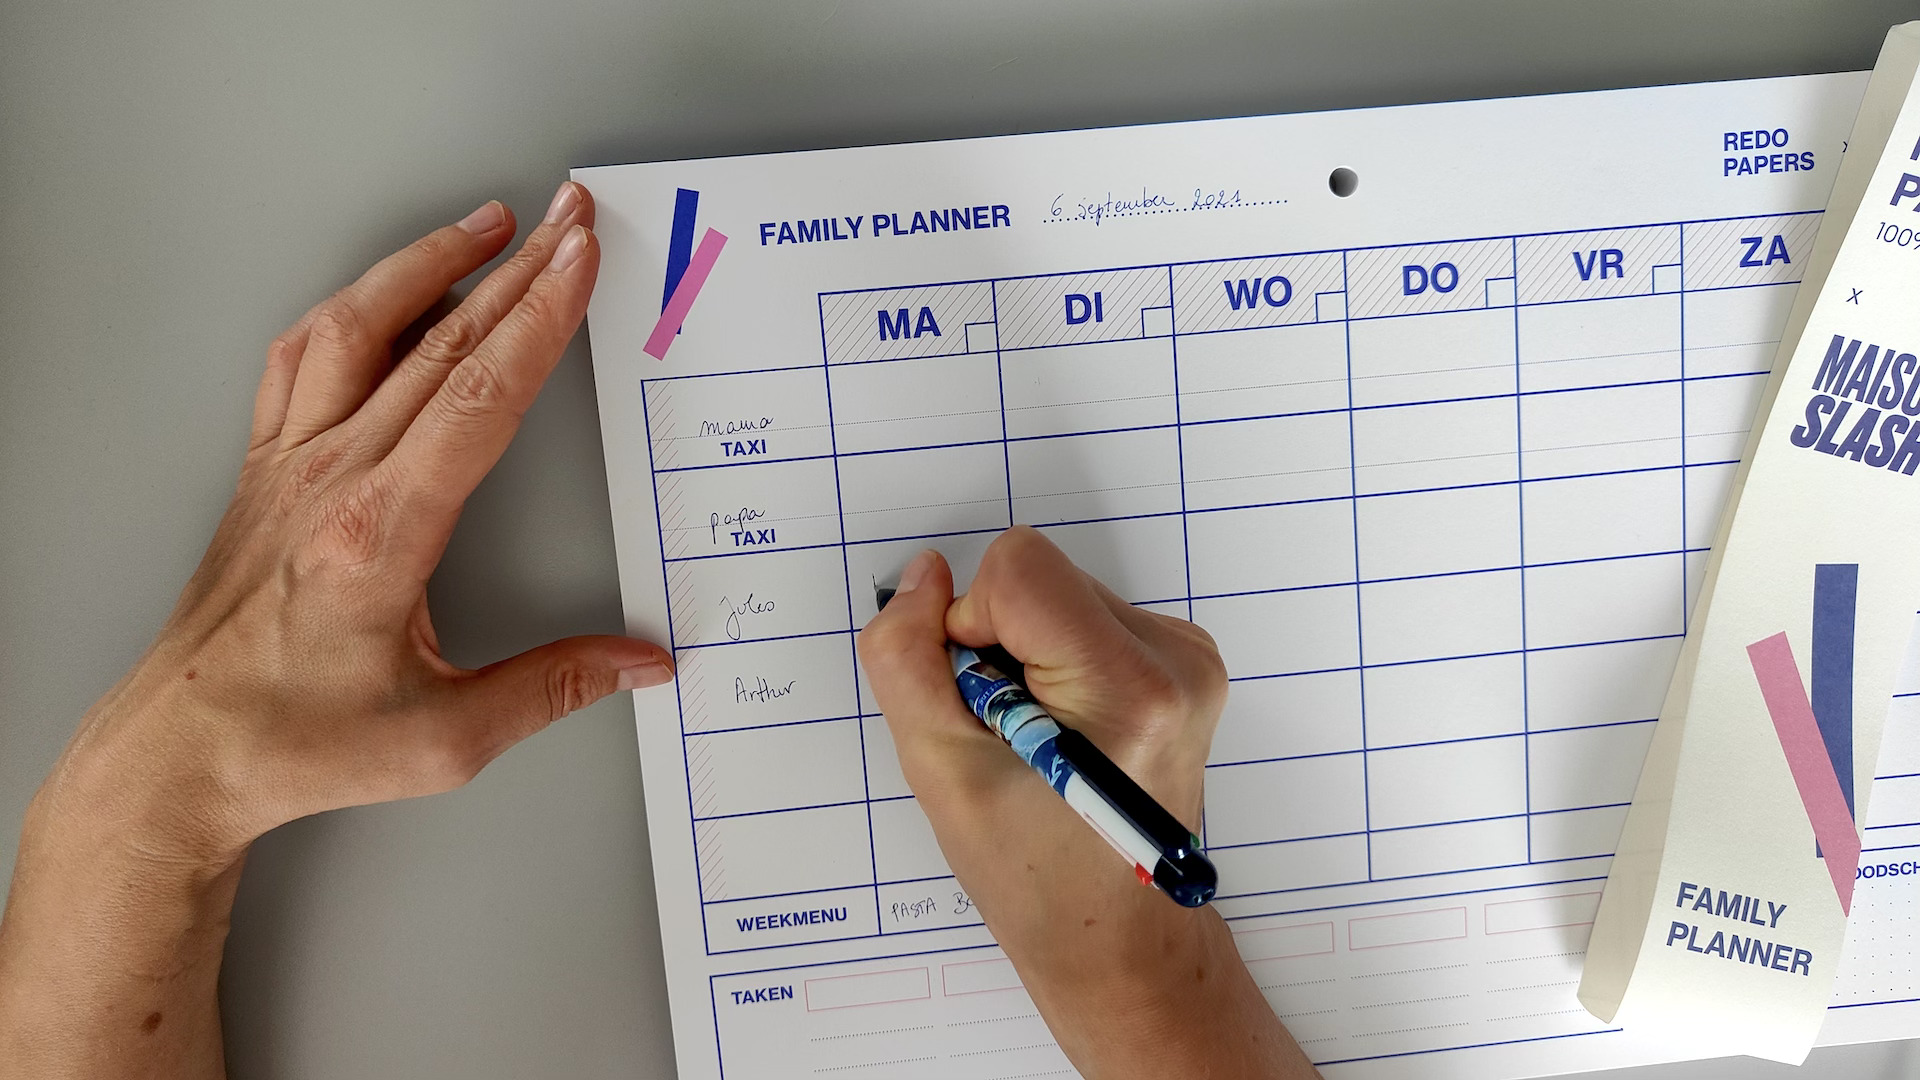 Bedankt Promotie Spruit Hoe kan je de planning van je gezin in kaart brengen? Digitaal of op papier?